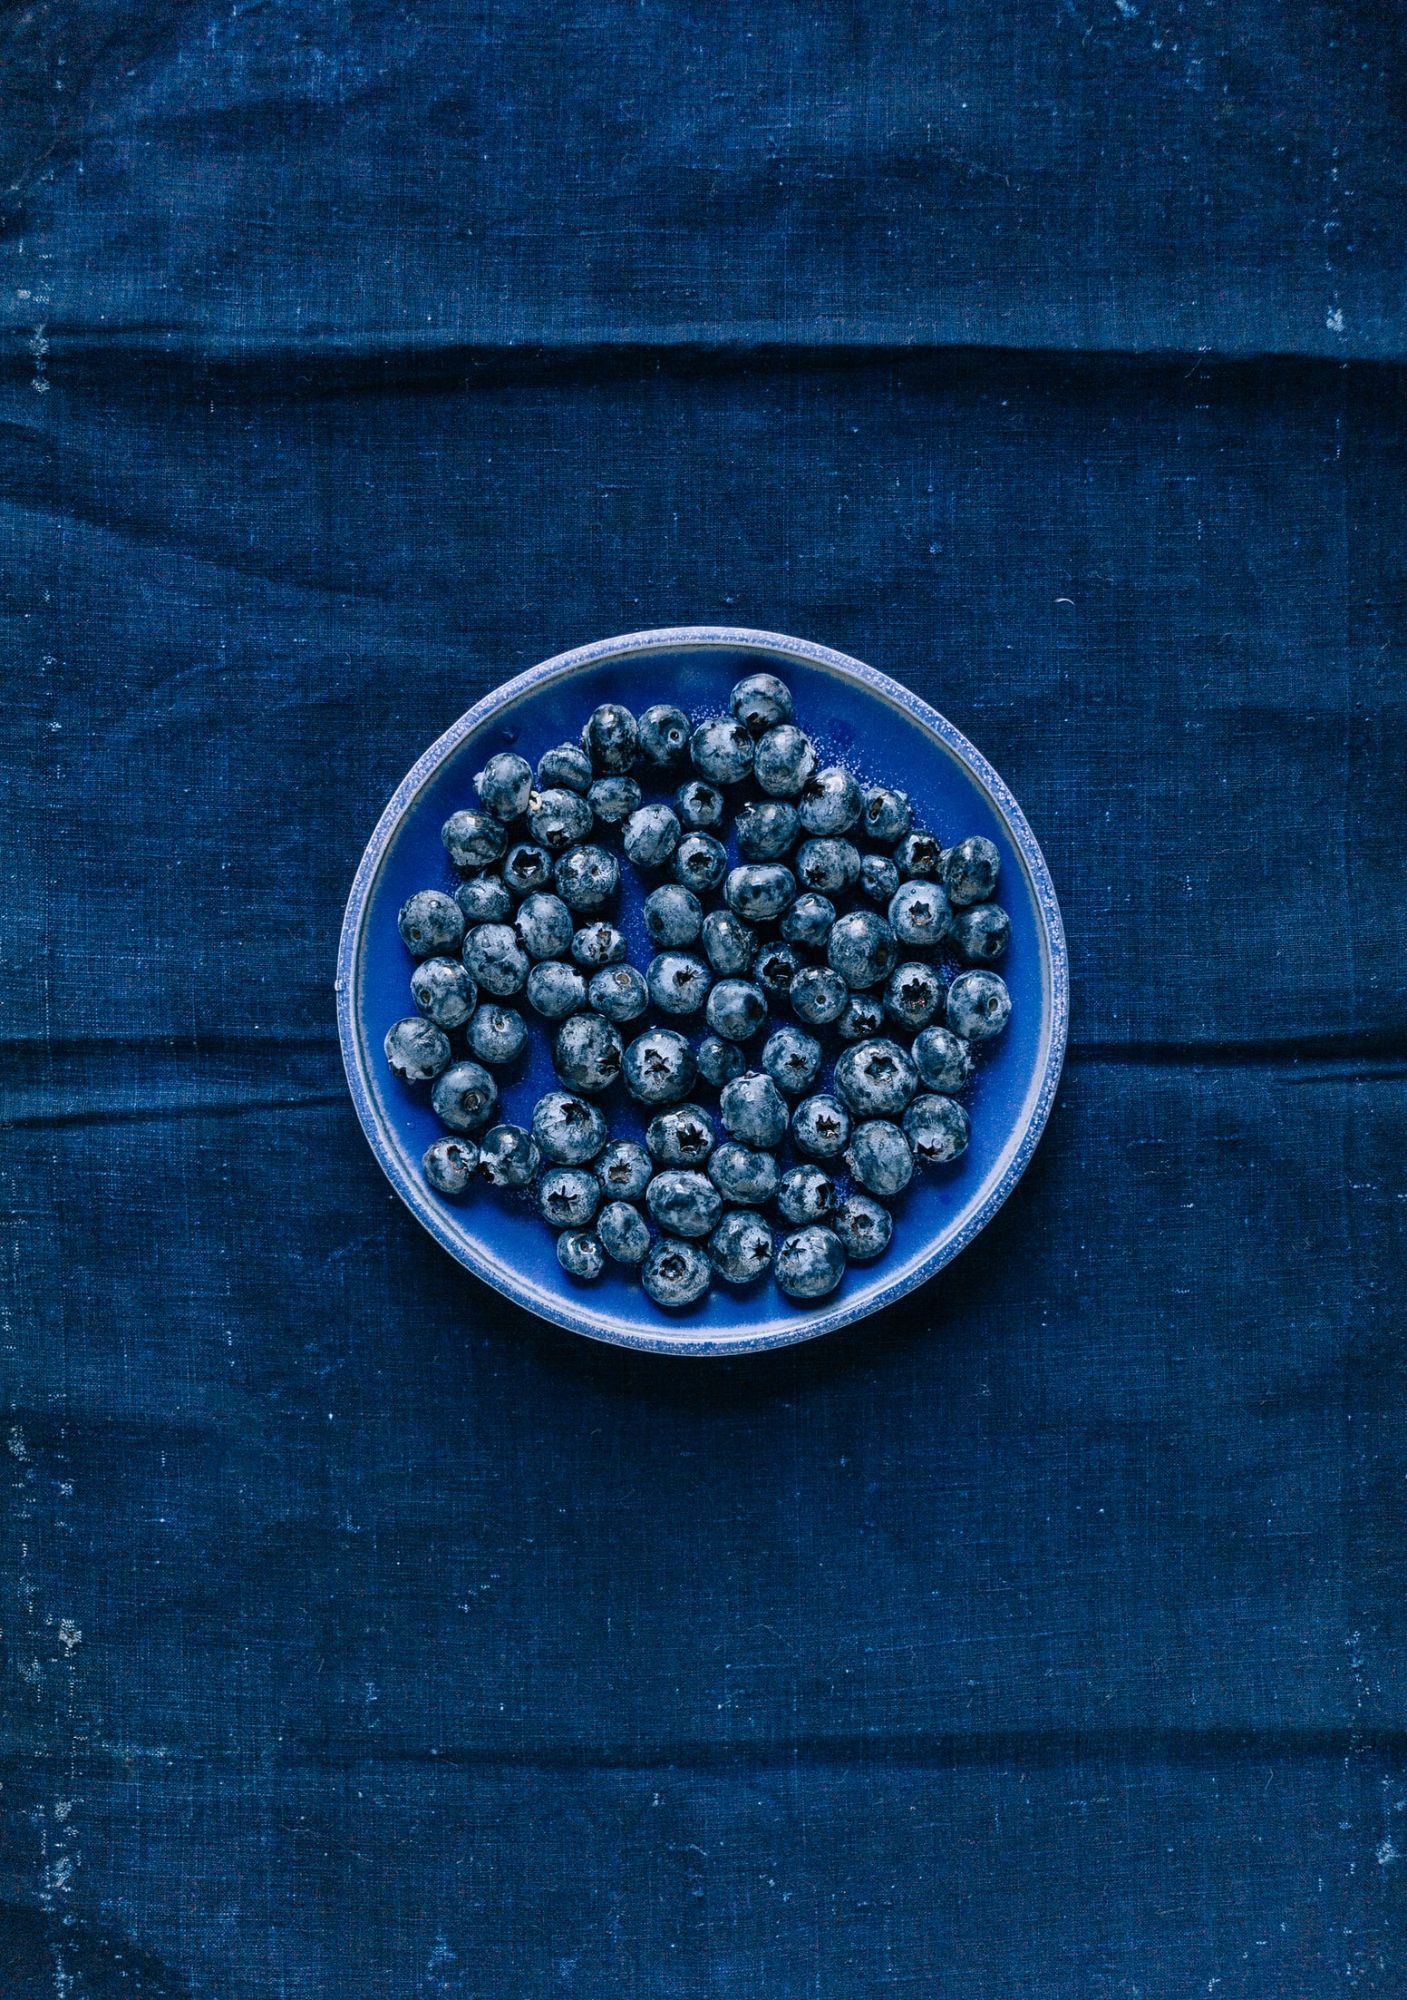 Blueberries June Seasonal Vegetables